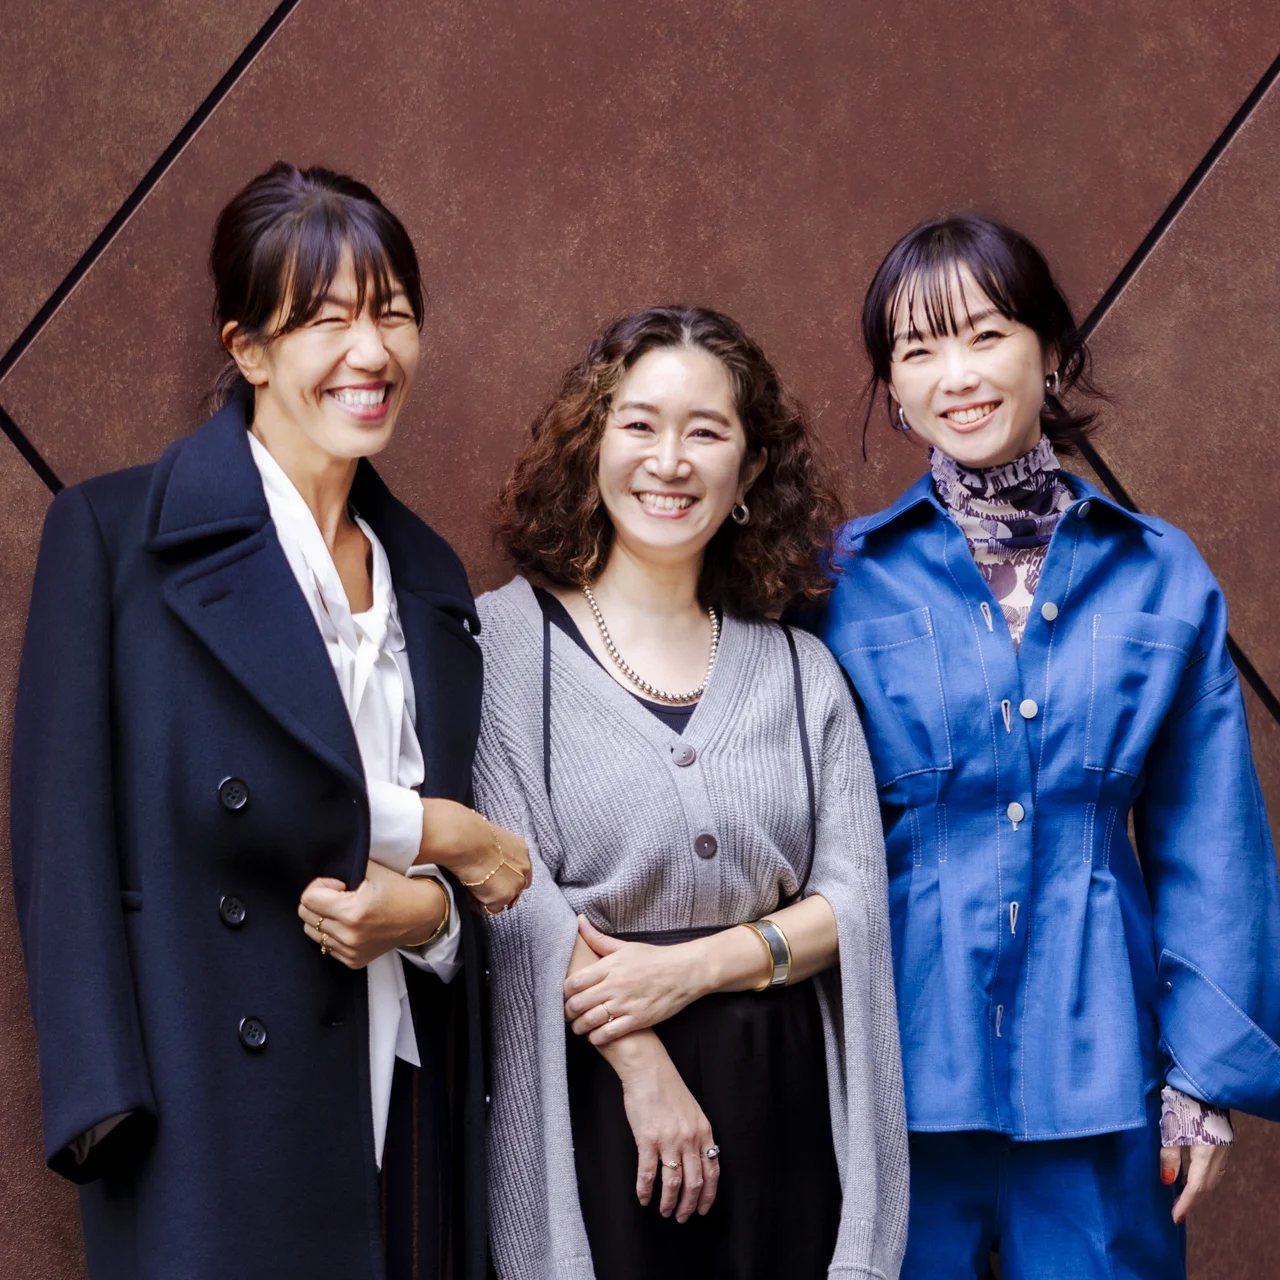 左から、バイヤーの武見弥生さん、プレスの志波かよこさん、デザイナーの横川美奈さん